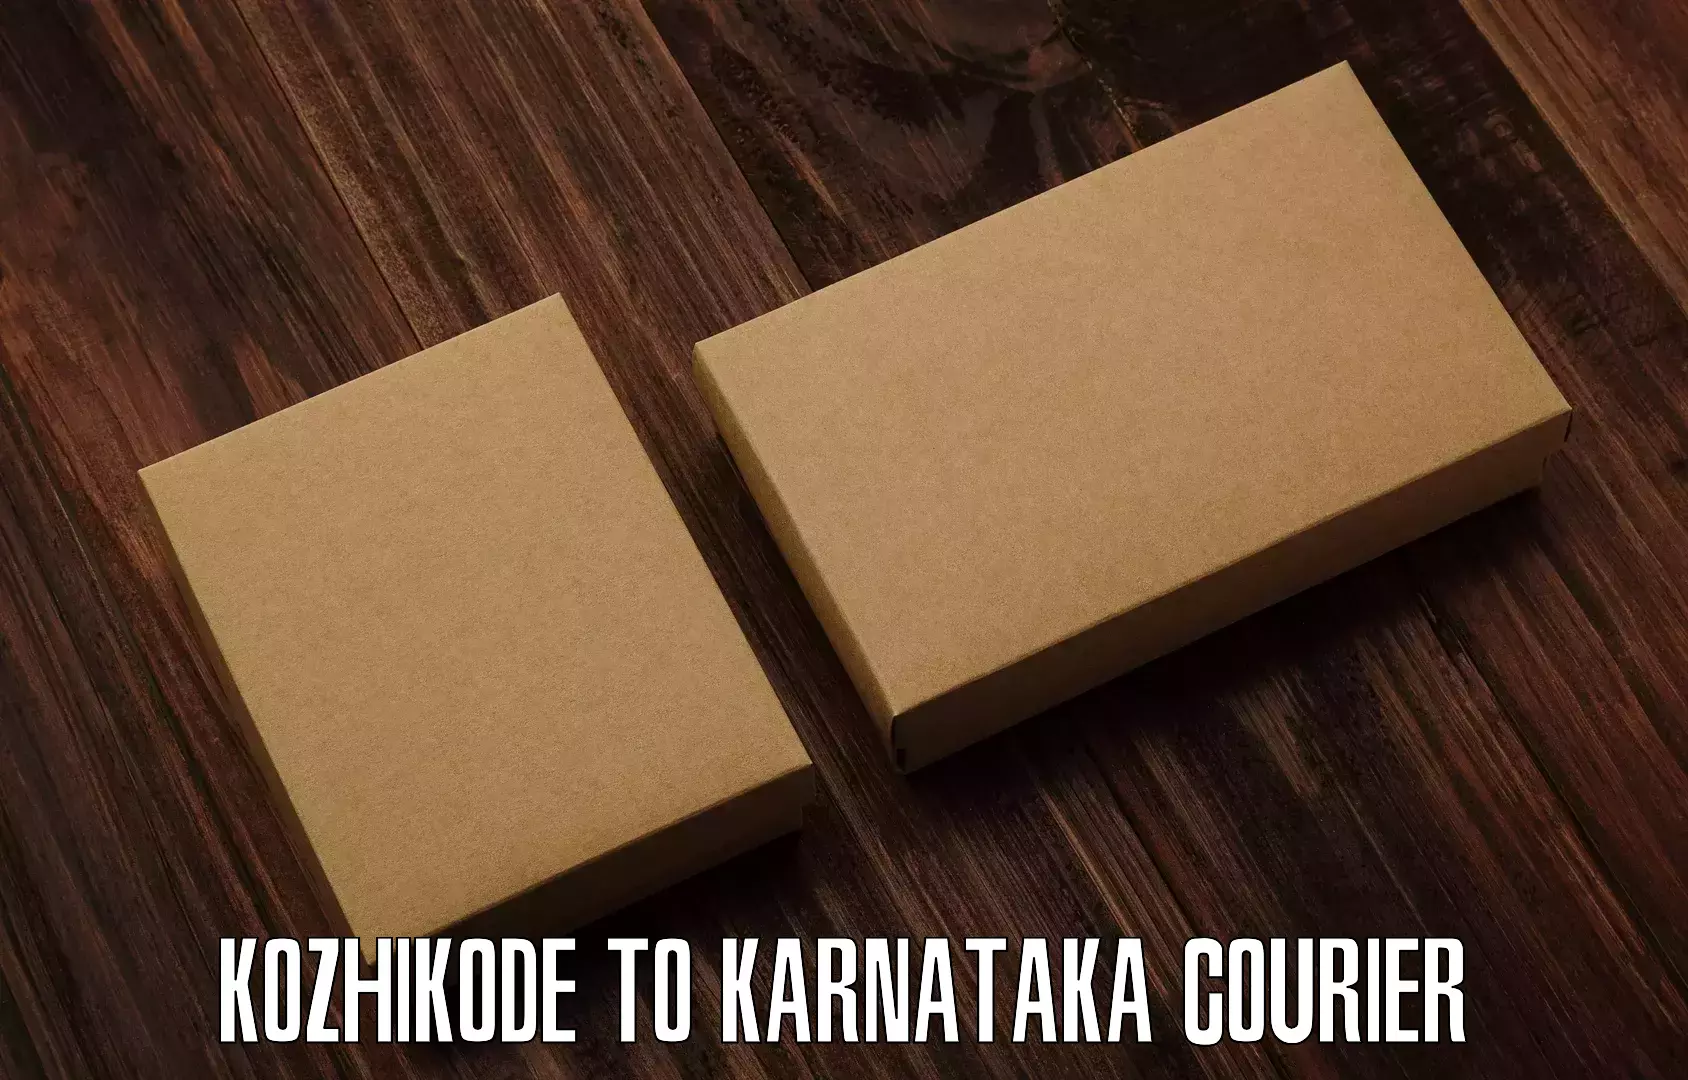 Comprehensive parcel tracking Kozhikode to Koratagere